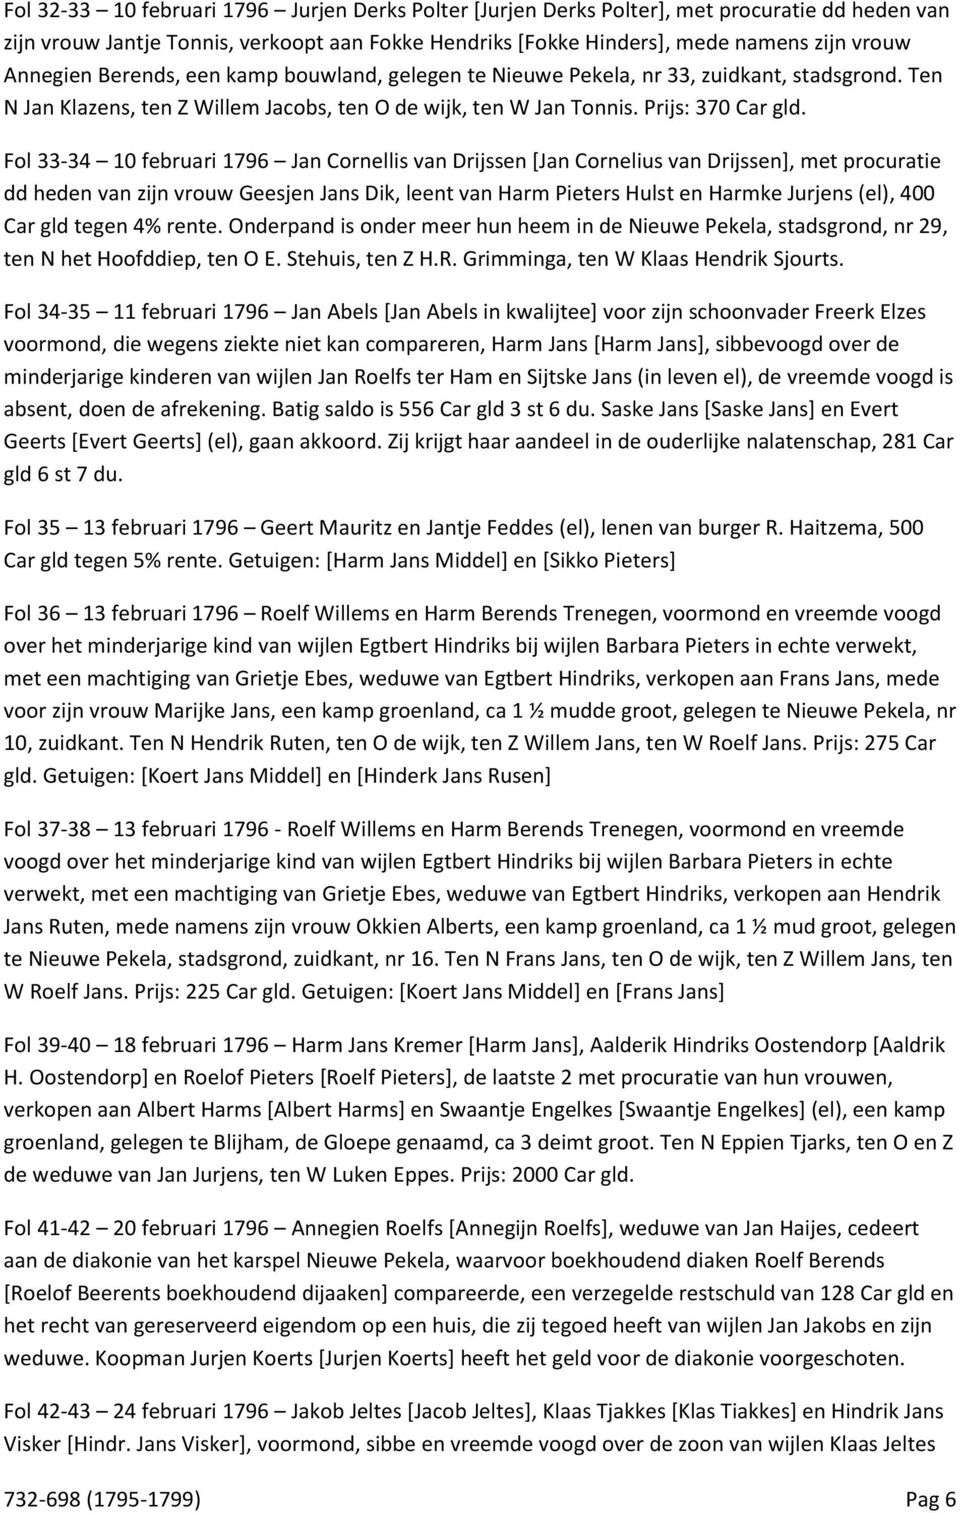 Fol 33-34 10 februari 1796 Jan Cornellis van Drijssen [Jan Cornelius van Drijssen], met procuratie dd heden van zijn vrouw Geesjen Jans Dik, leent van Harm Pieters Hulst en Harmke Jurjens (el), 400